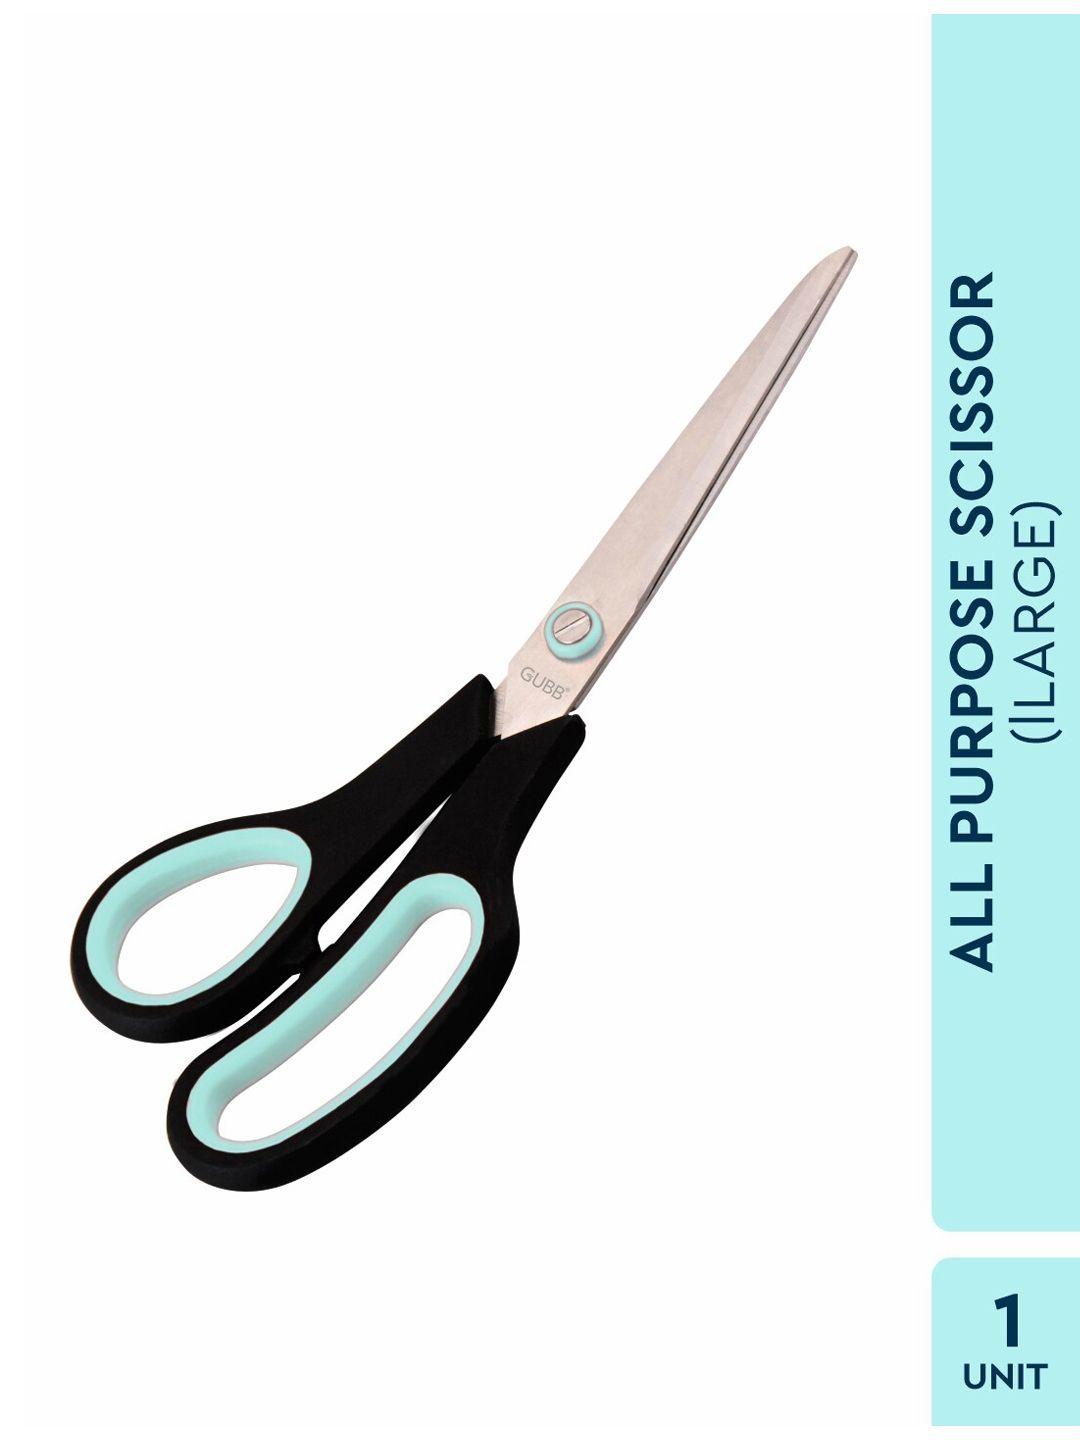 gubb silver-toned all purpose scissor